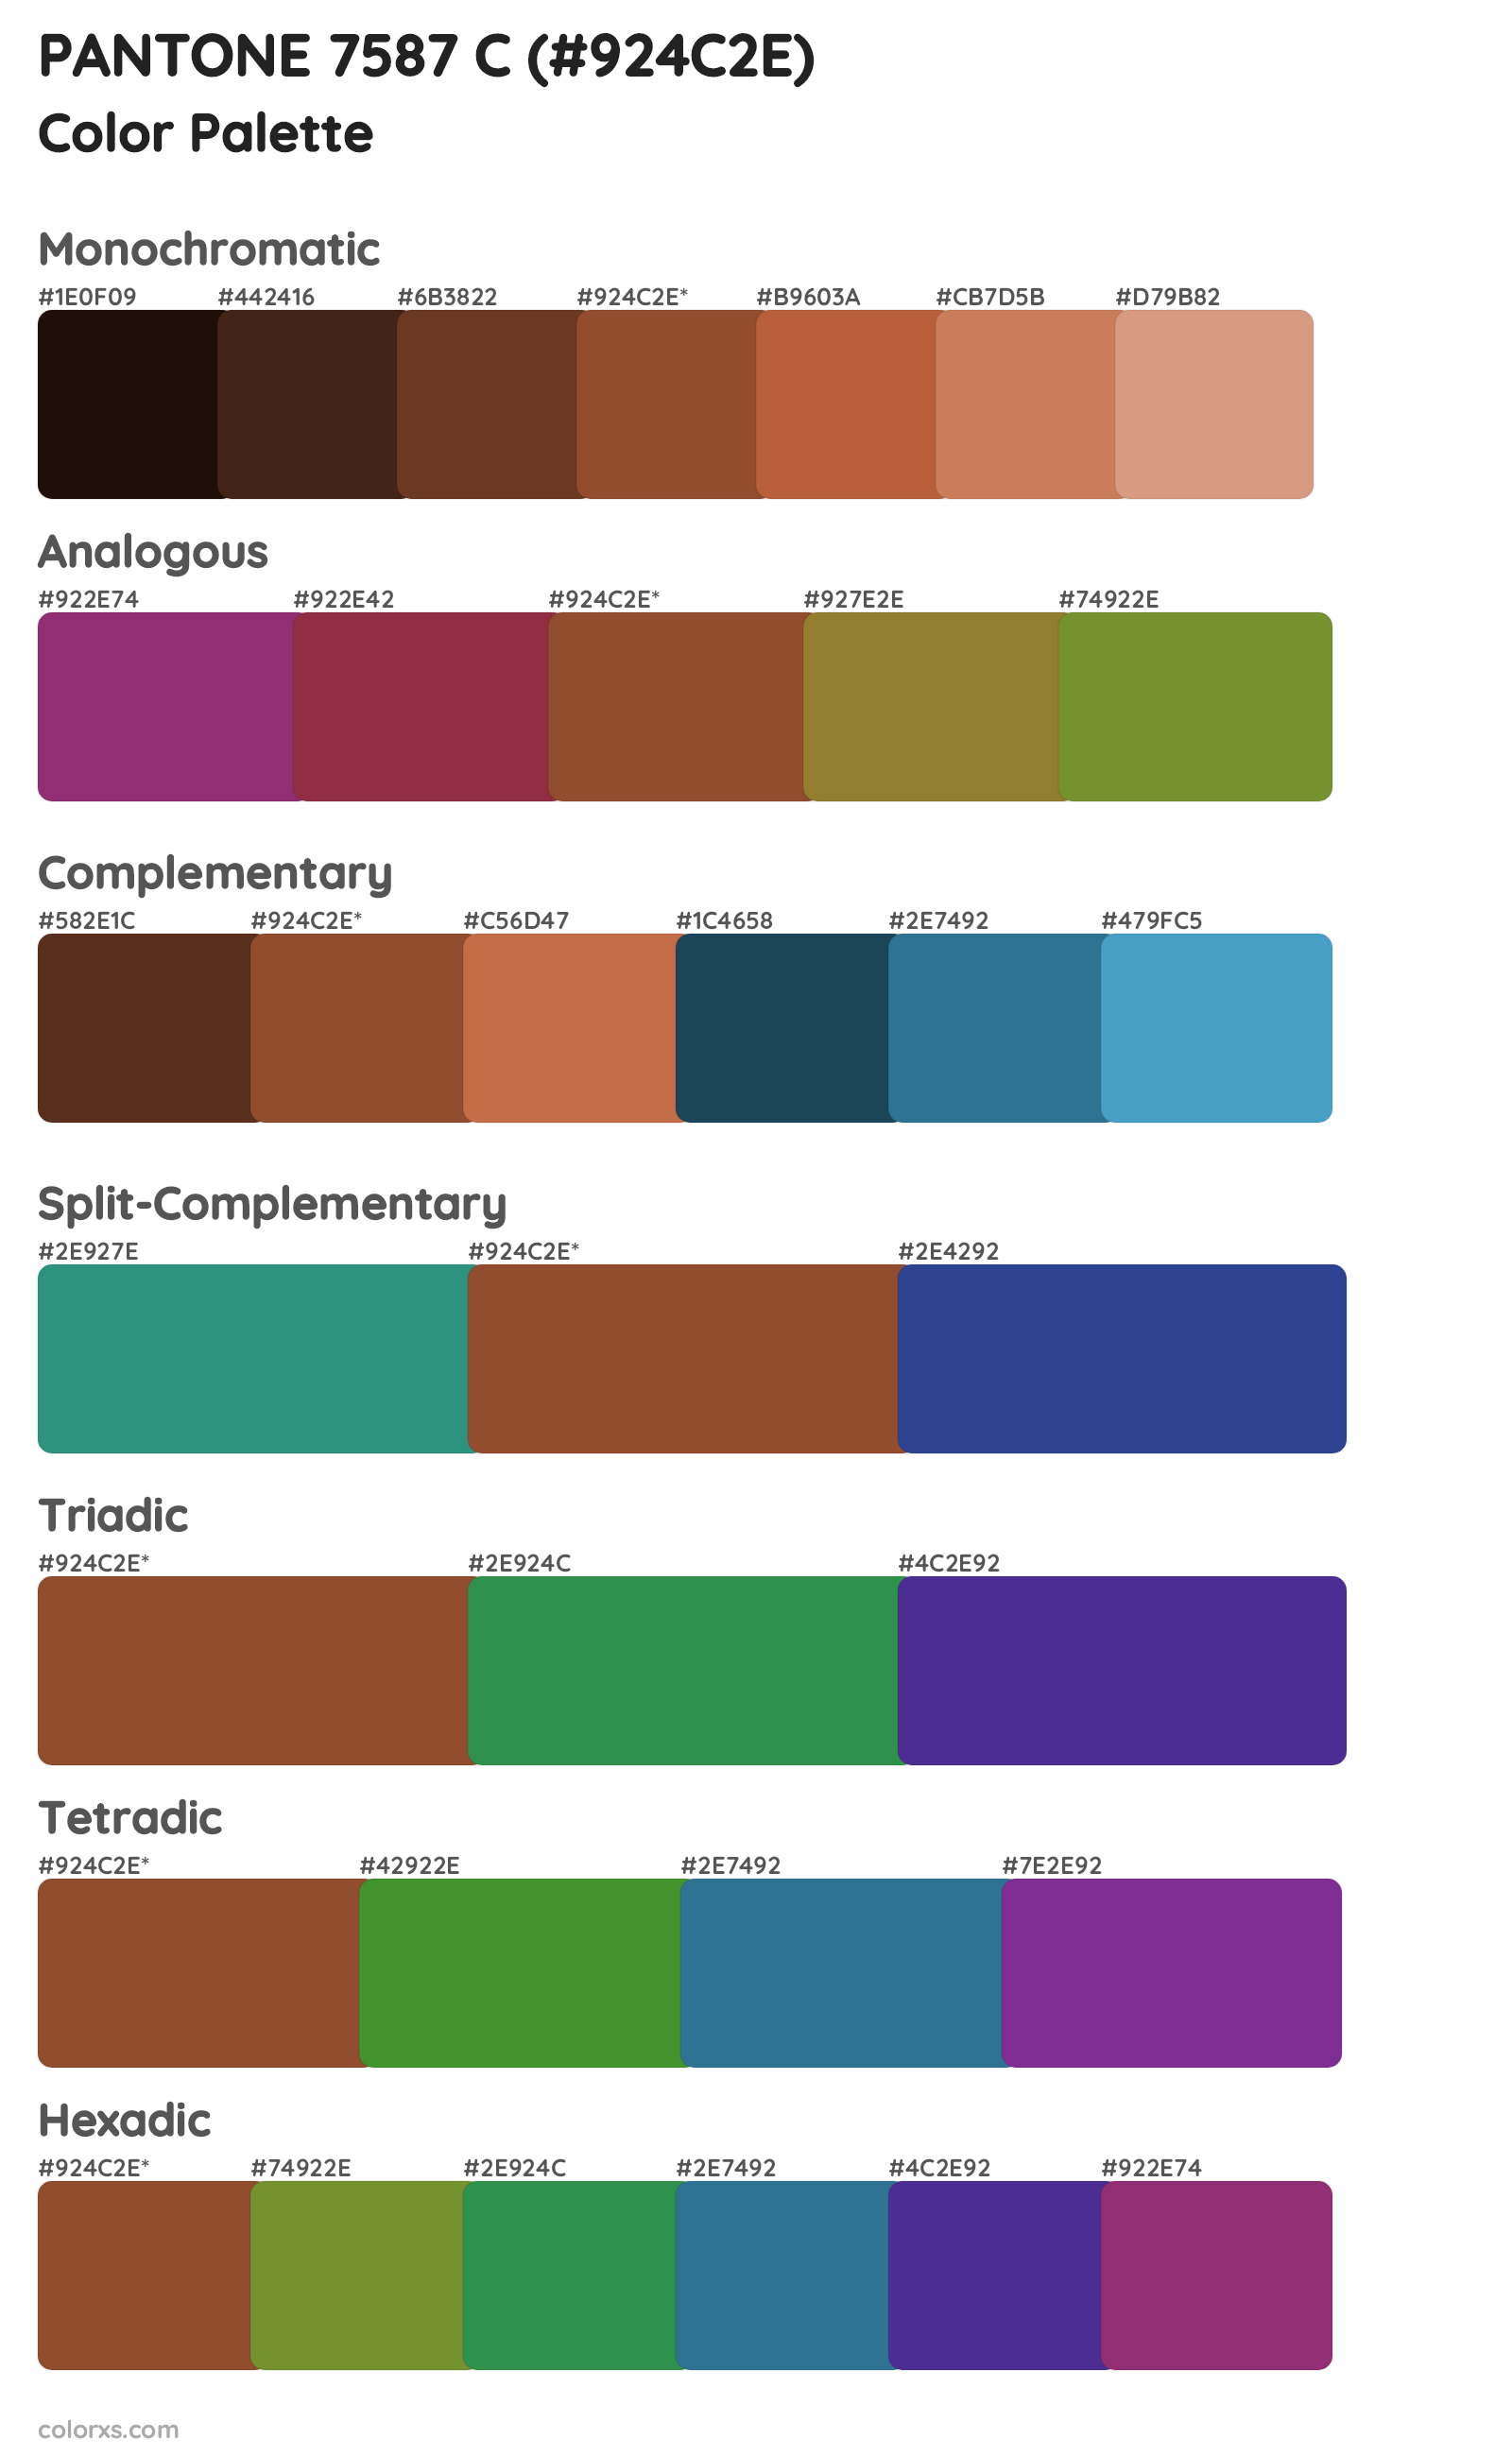 PANTONE 7587 C Color Scheme Palettes